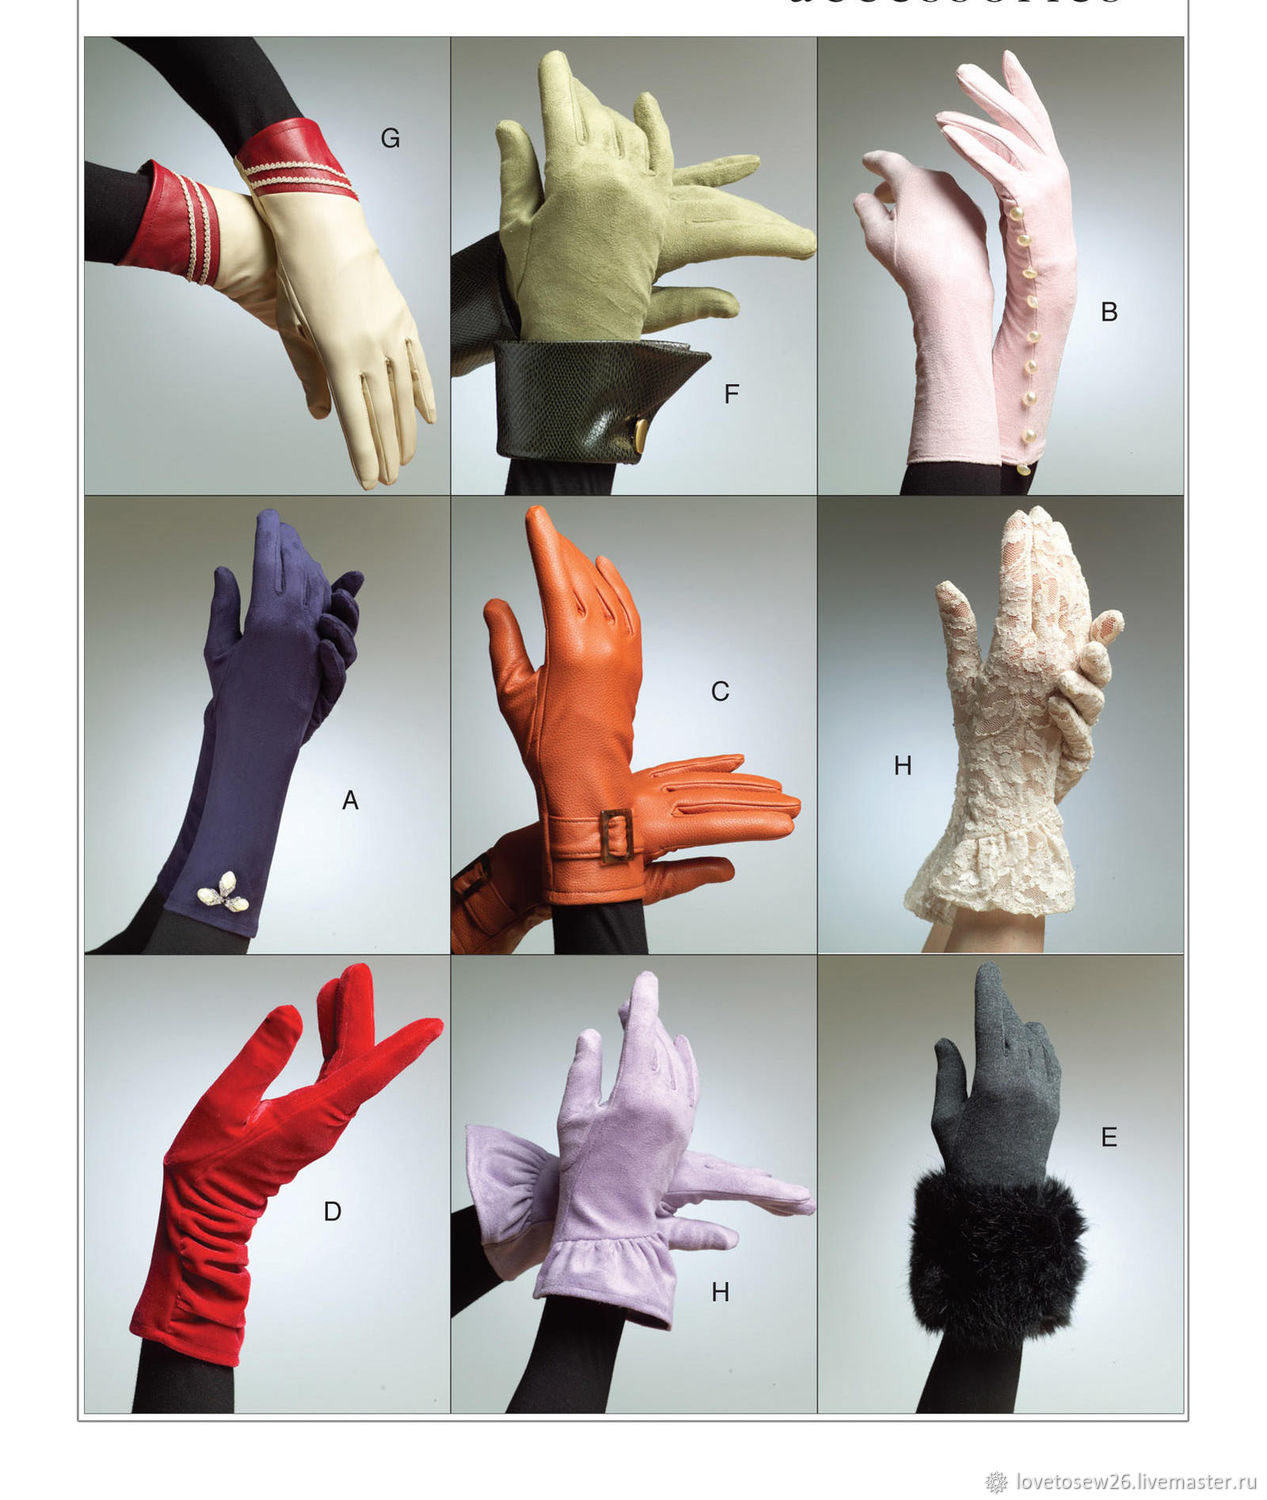 Готовая выкройка и описание пошива трикотажных перчаток. Годятся и для себя и в подарок